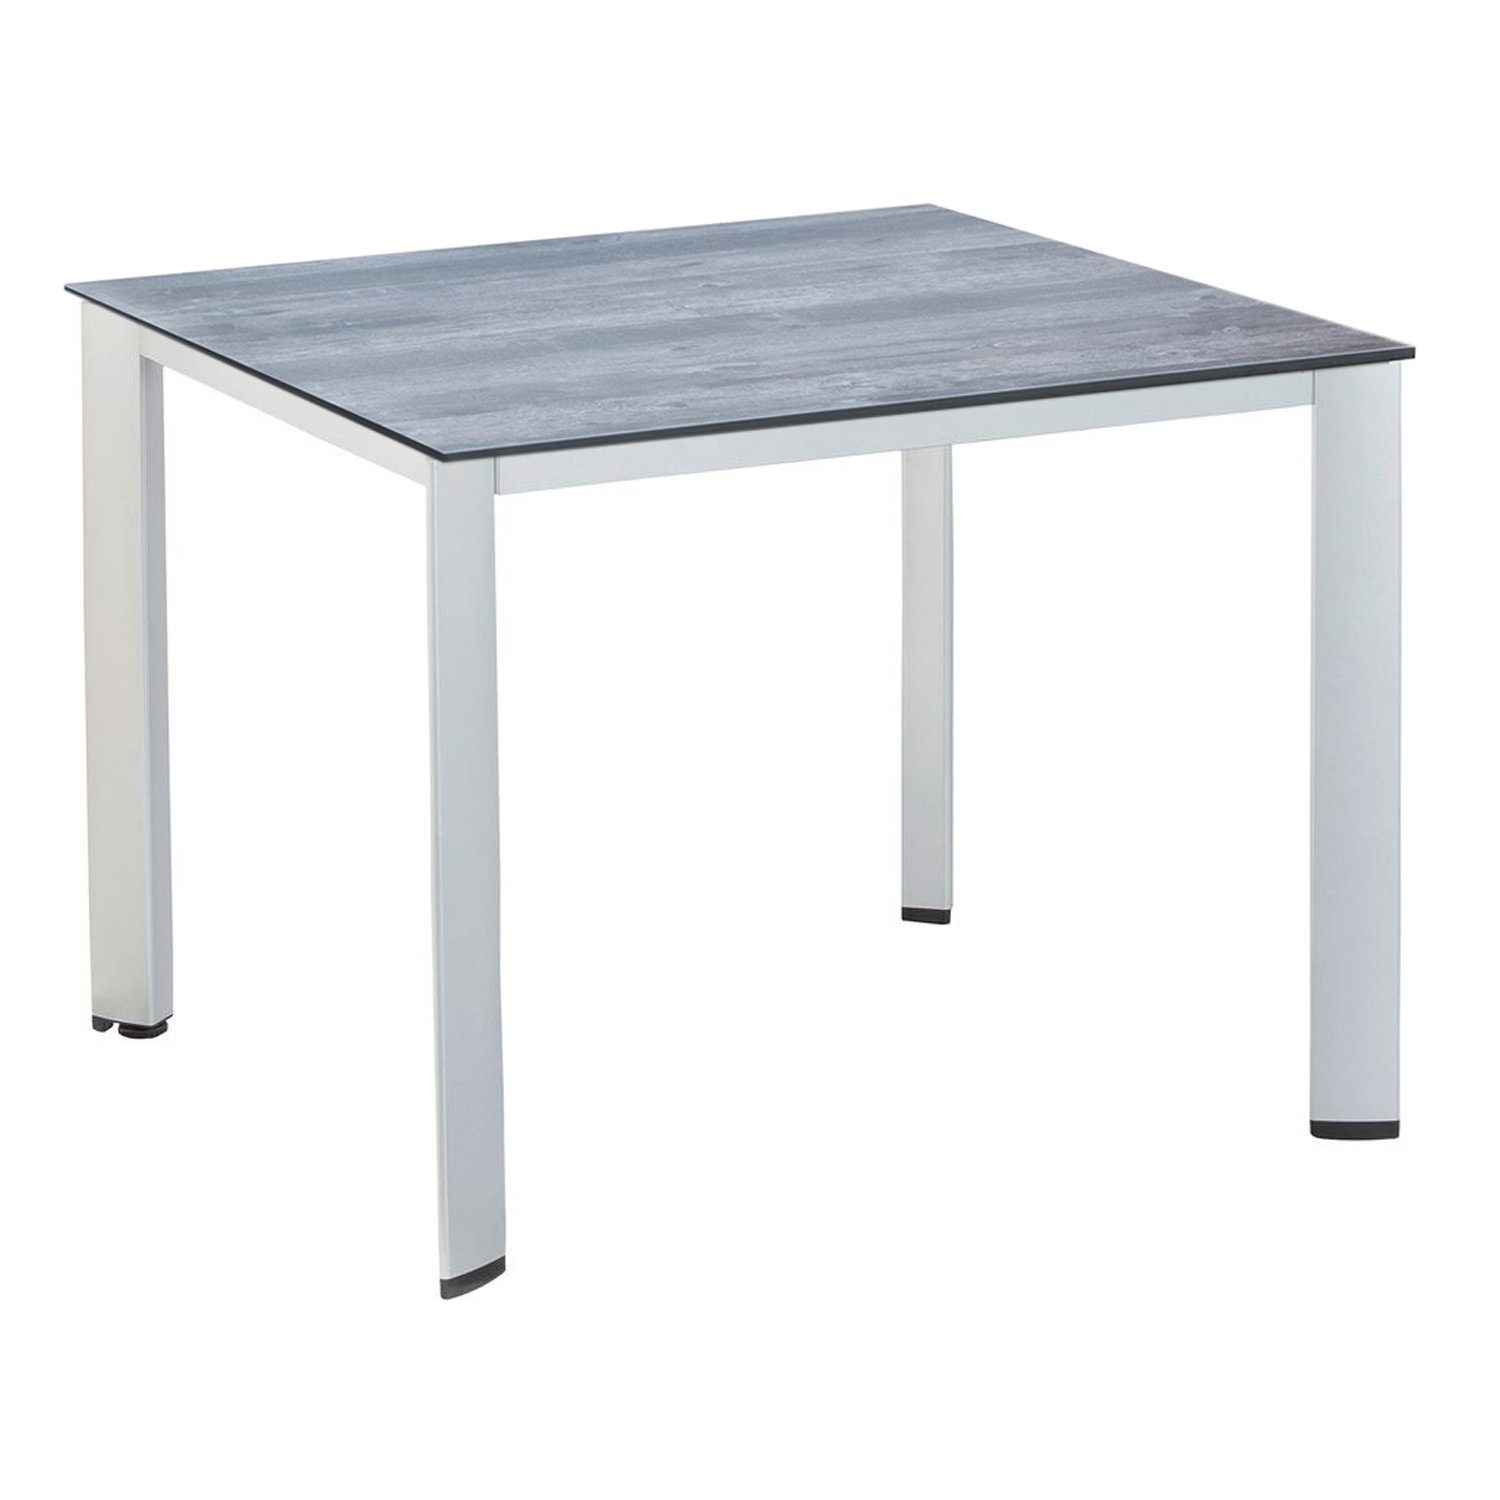 KETTLER Gartentisch Alu Kettler HPL Tischplatte 95x95x72 cm EDGE silber Gartentisch mit